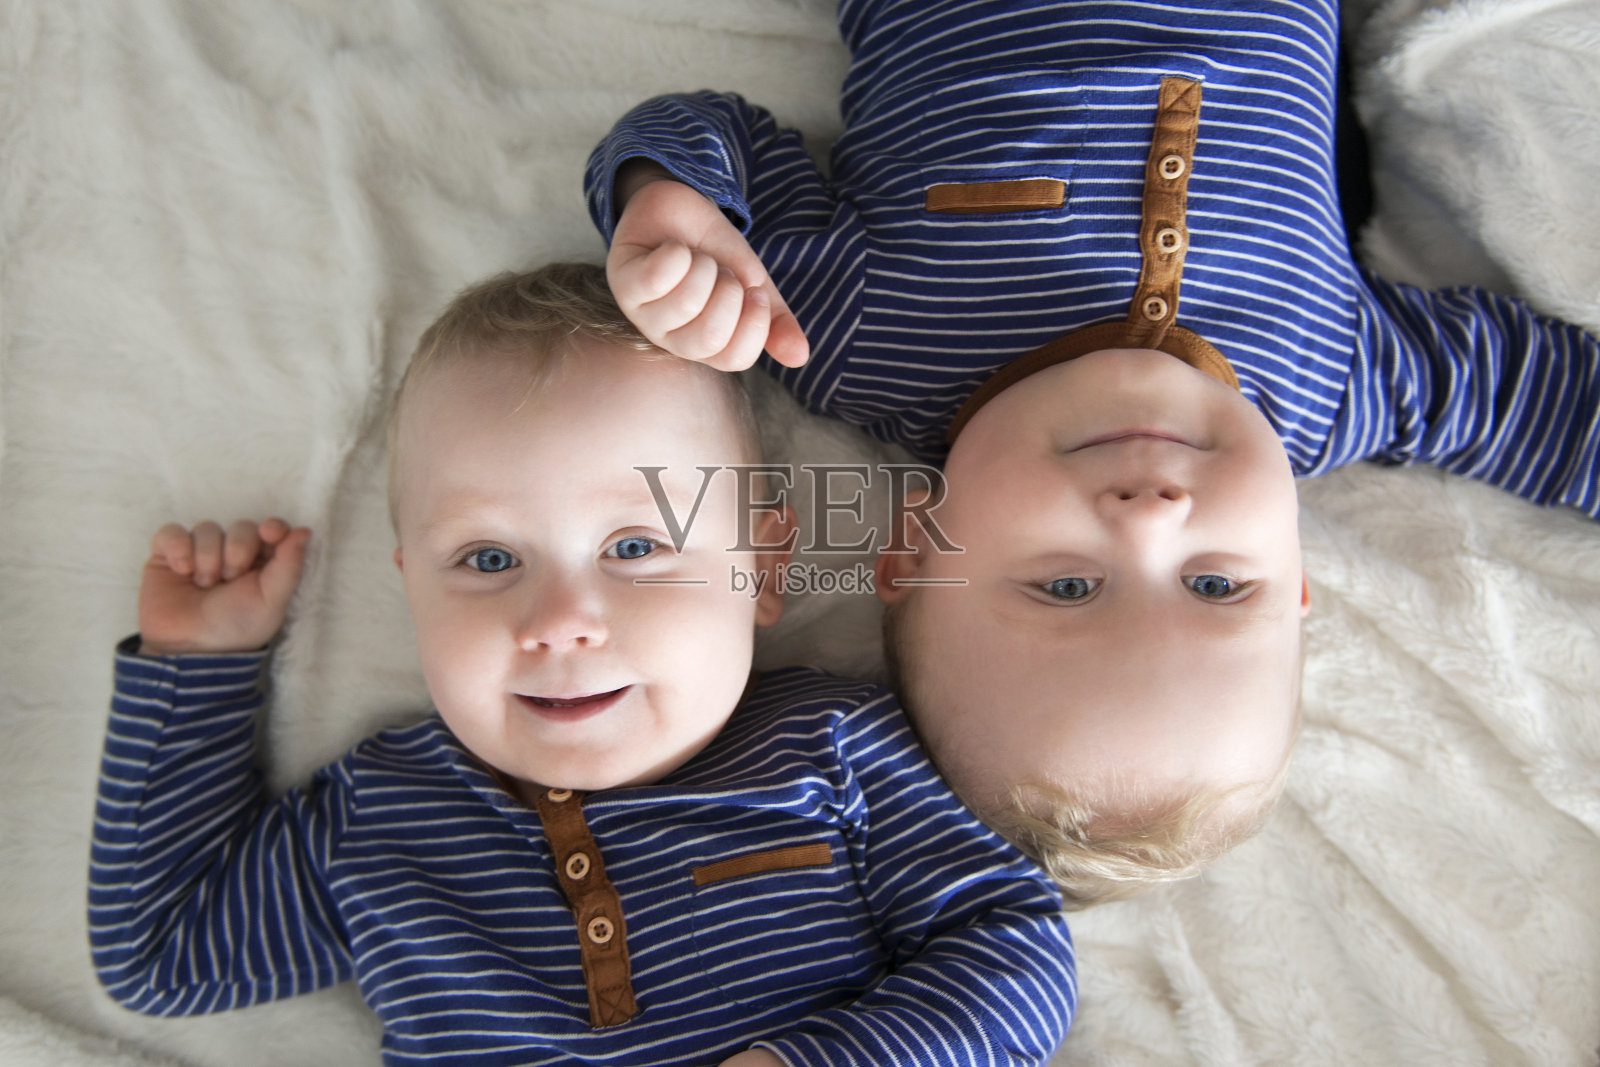 倒置的同卵双胞胎照片摄影图片